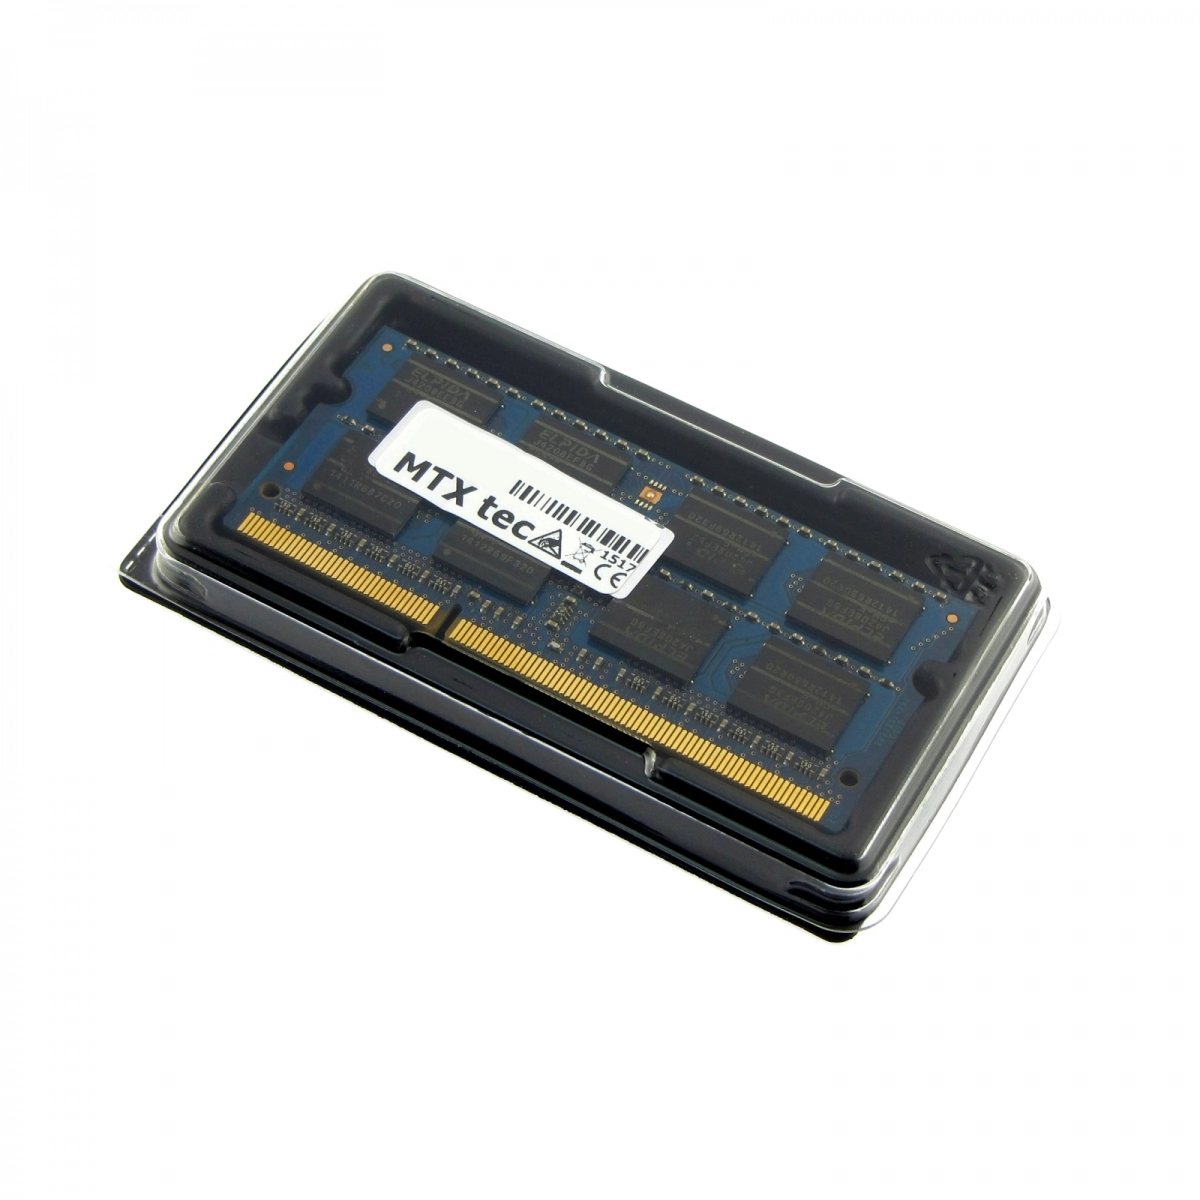 MTXtec Arbeitsspeicher 8 GB RAM für ASUS R751JB